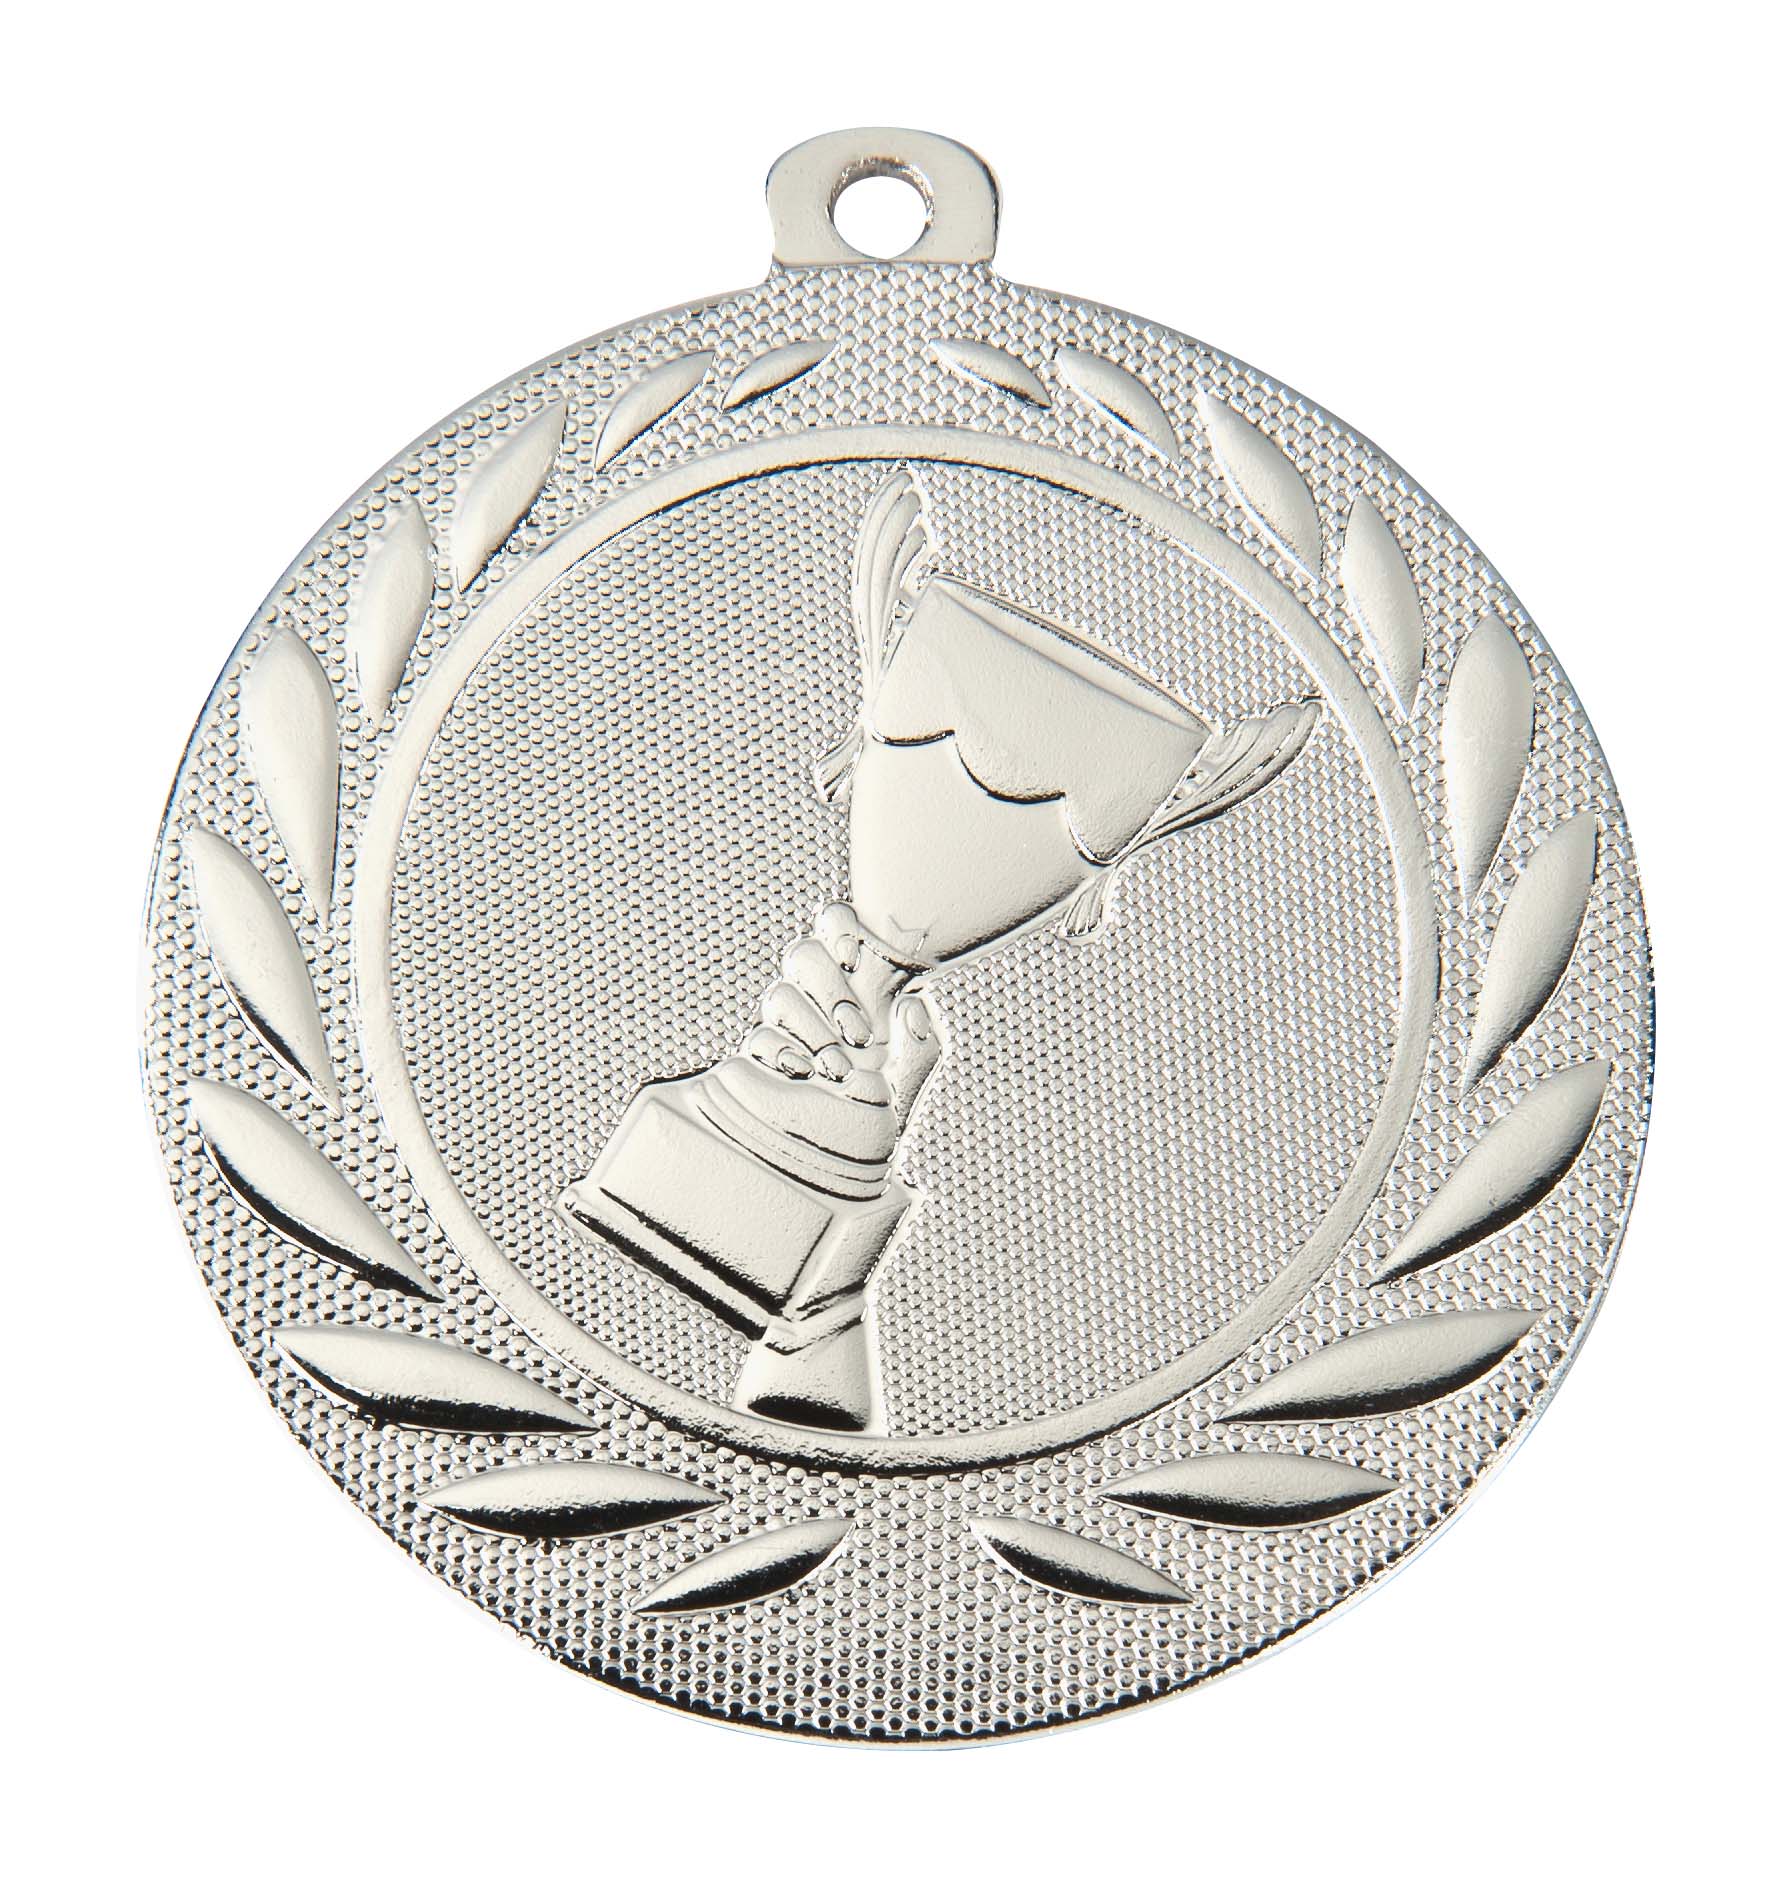 Medaille DI5000A inkl. Band und Beschriftung Silber Fertig montiert gegen Aufpreis